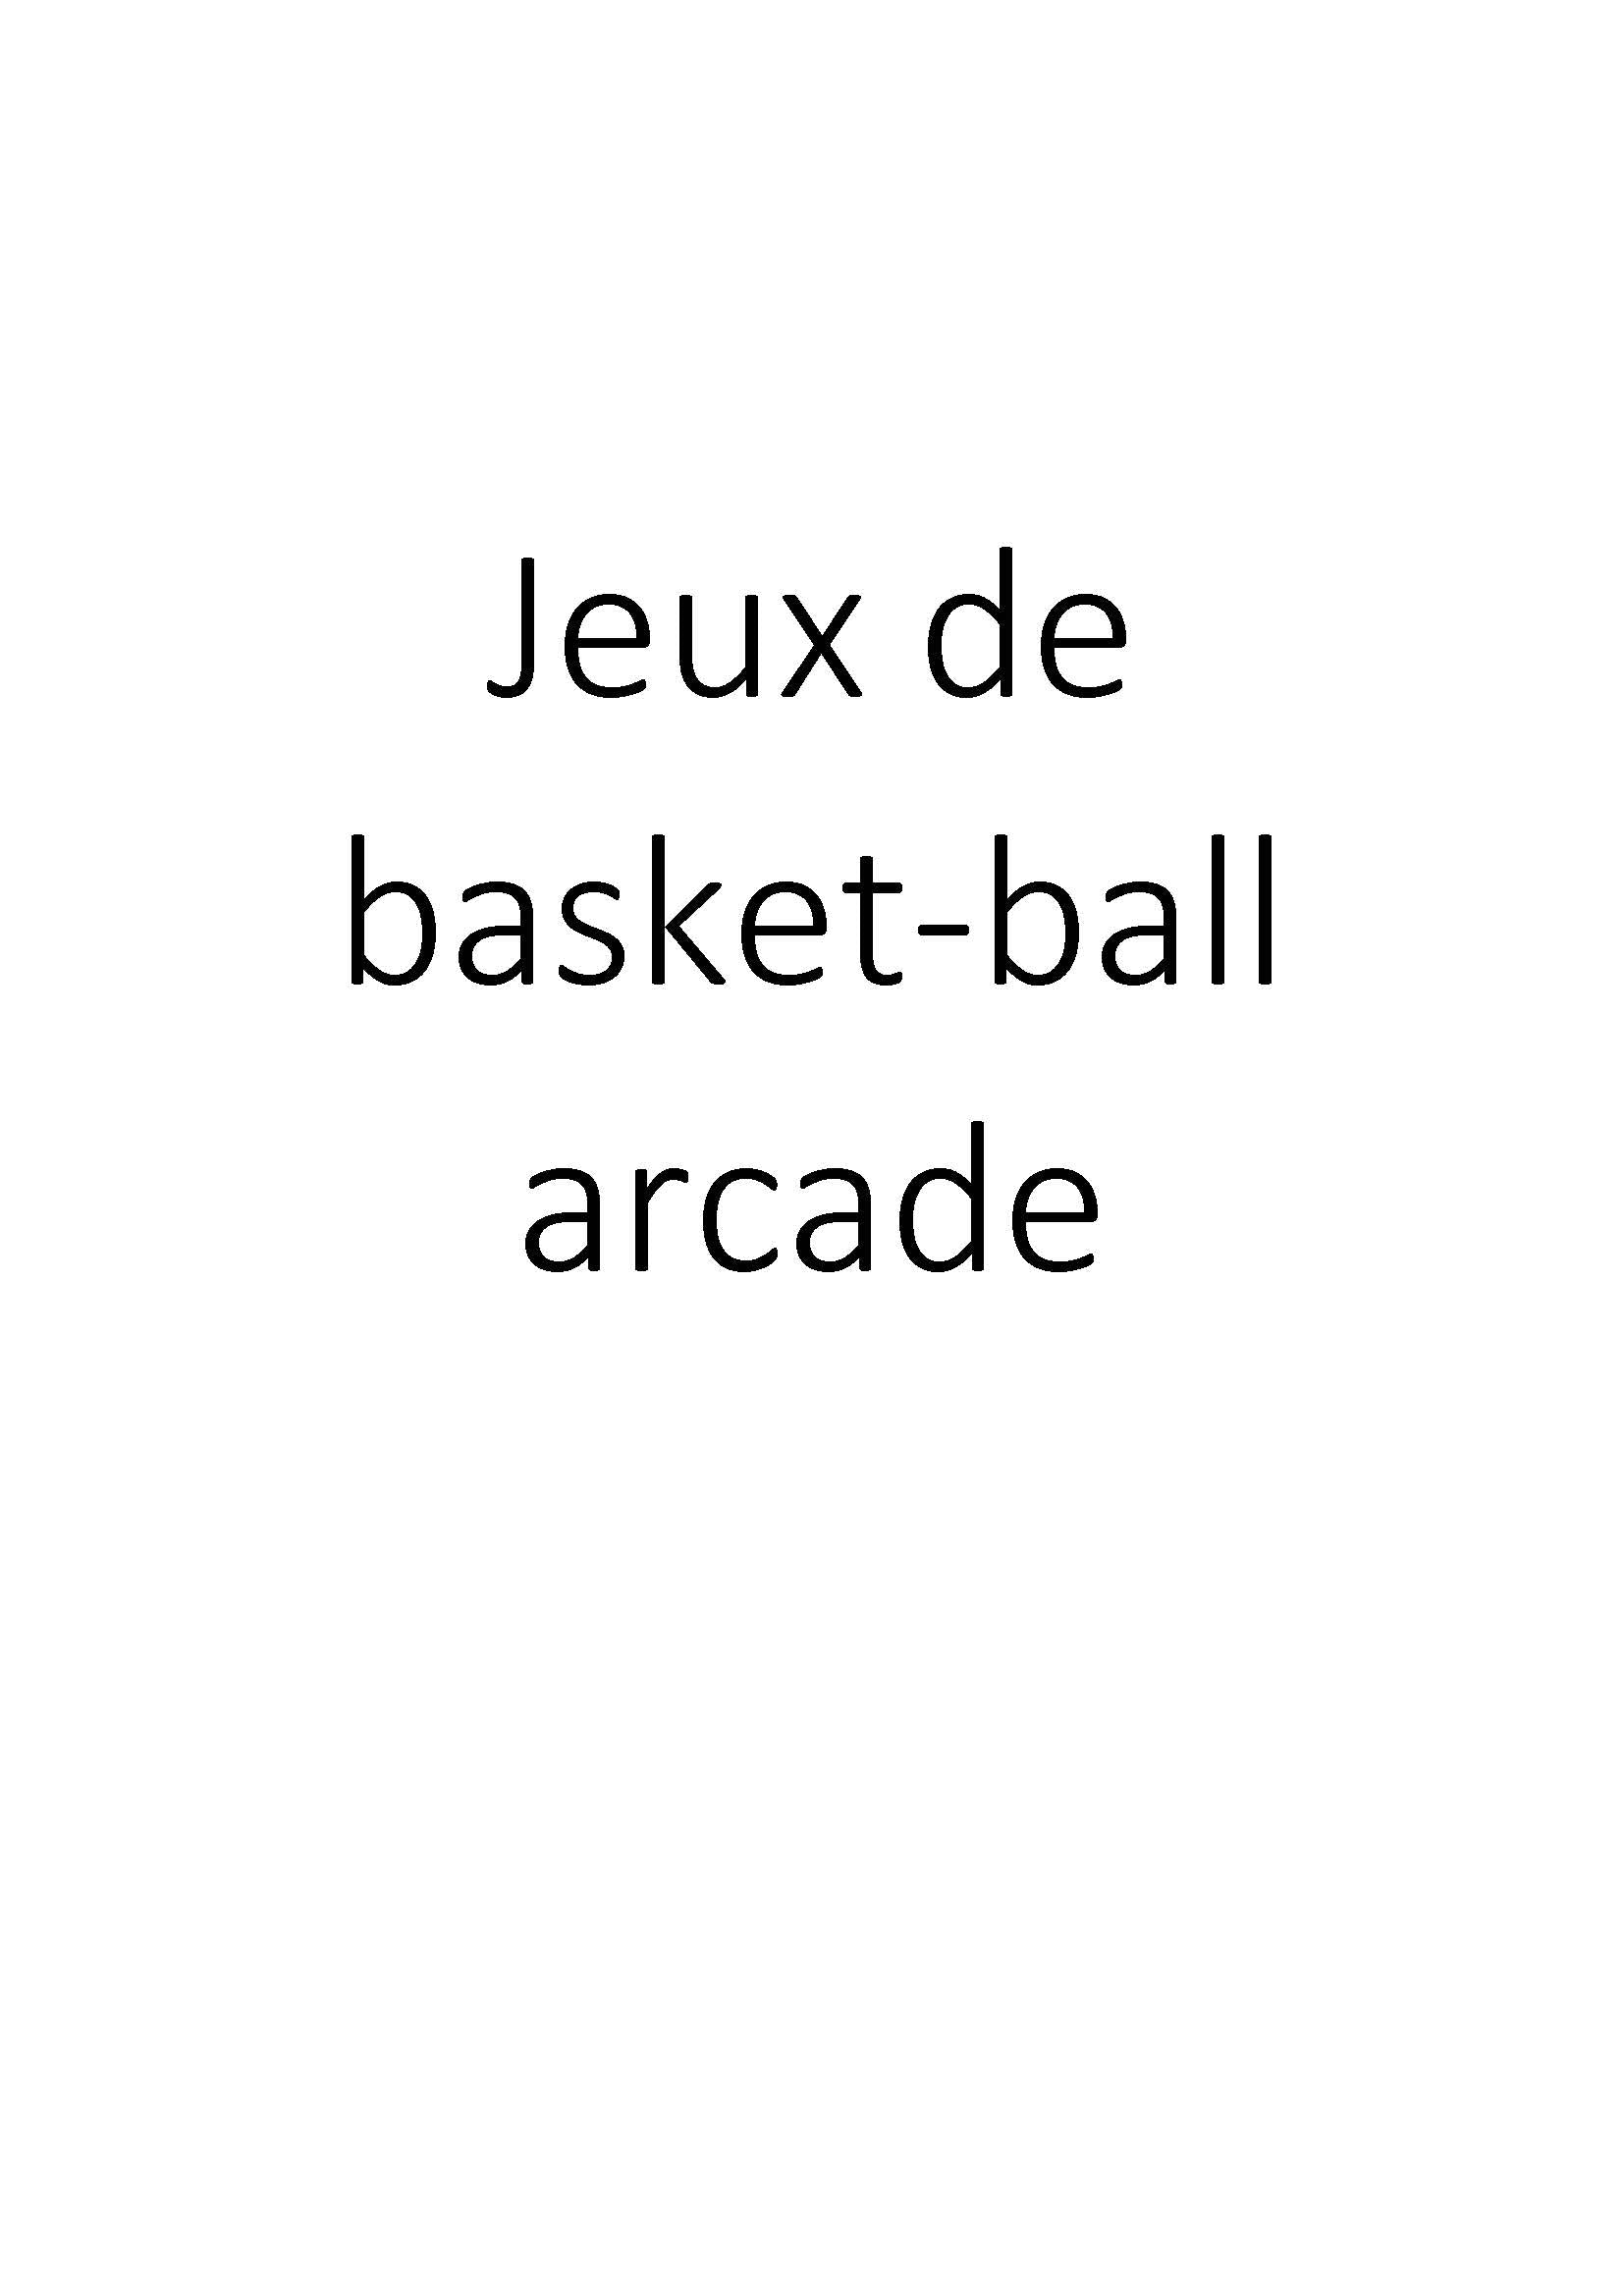 Jeux de basket-ball arcade clicktofournisseur.com